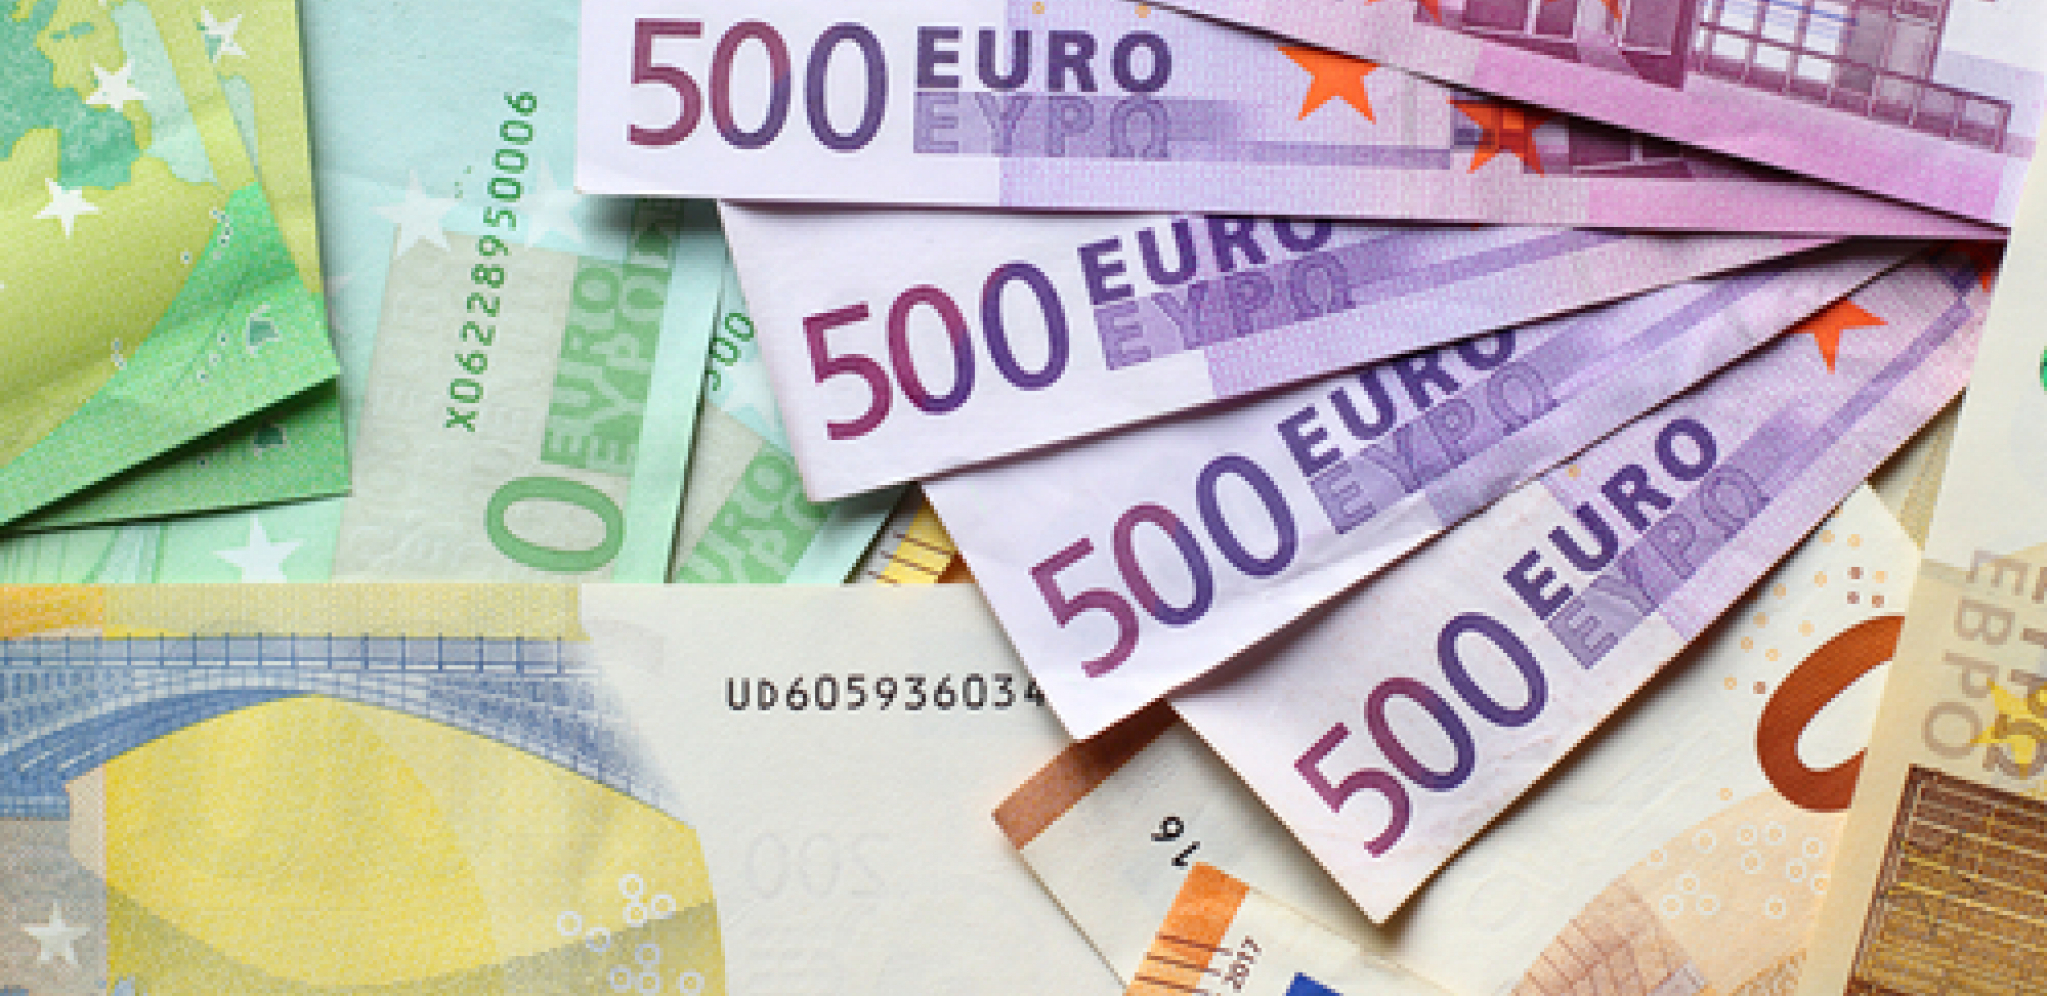 NARODNA BANKA SRBIJE SAOPŠTILA Ovo je zvanični srednji kurs evra za petak